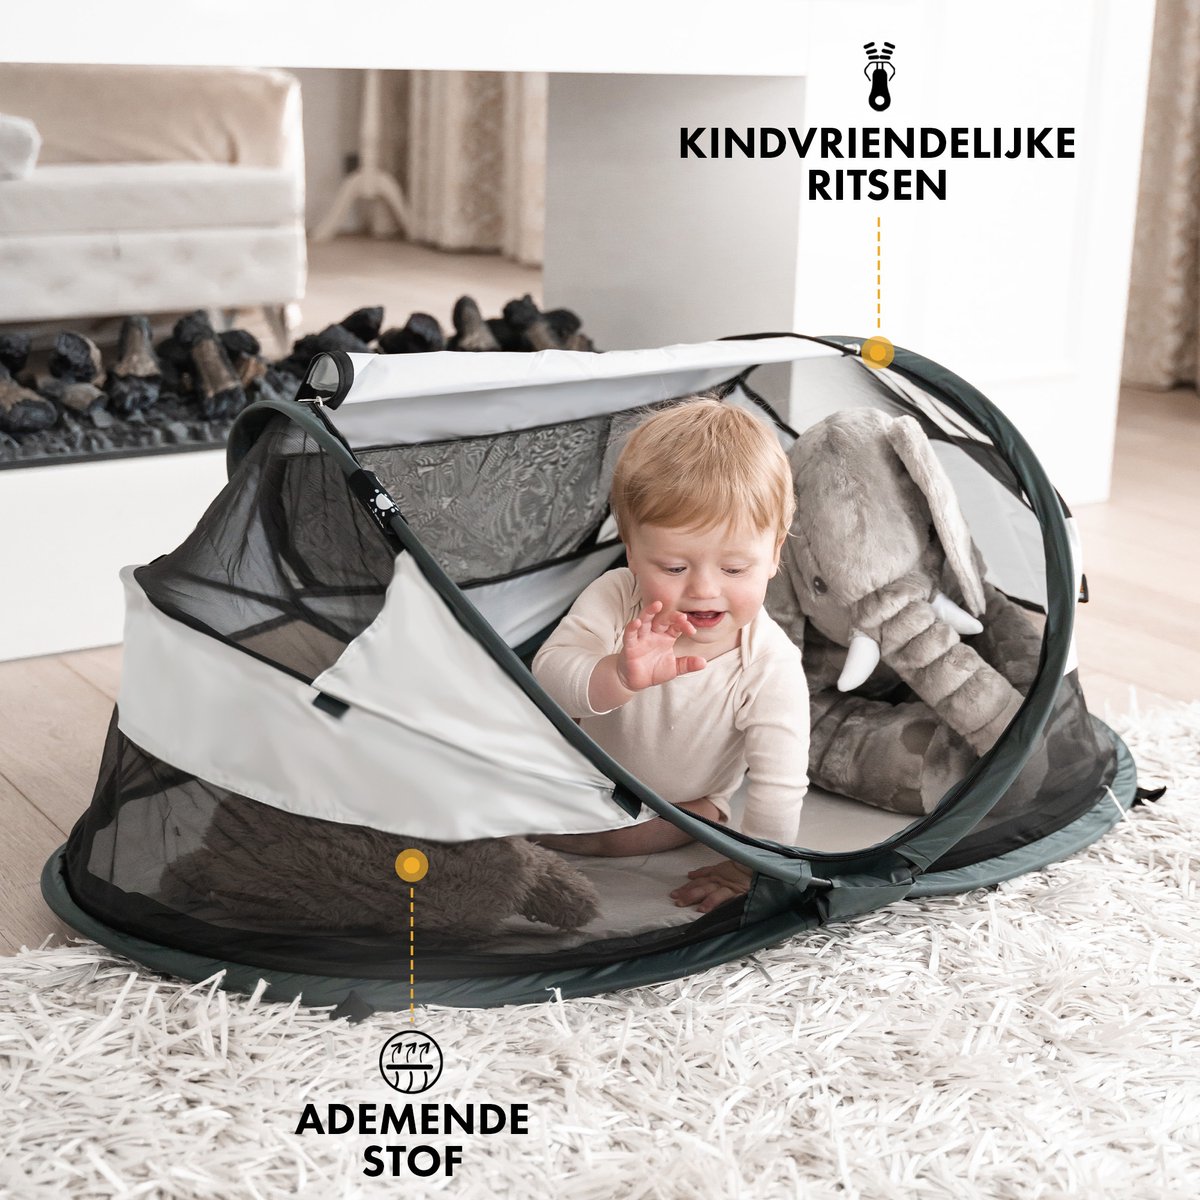 Integratie vrijheid bizon Deryan Baby Luxe Campingbedje – Inclusief zelfopblaasbare matras - Cream |  bol.com